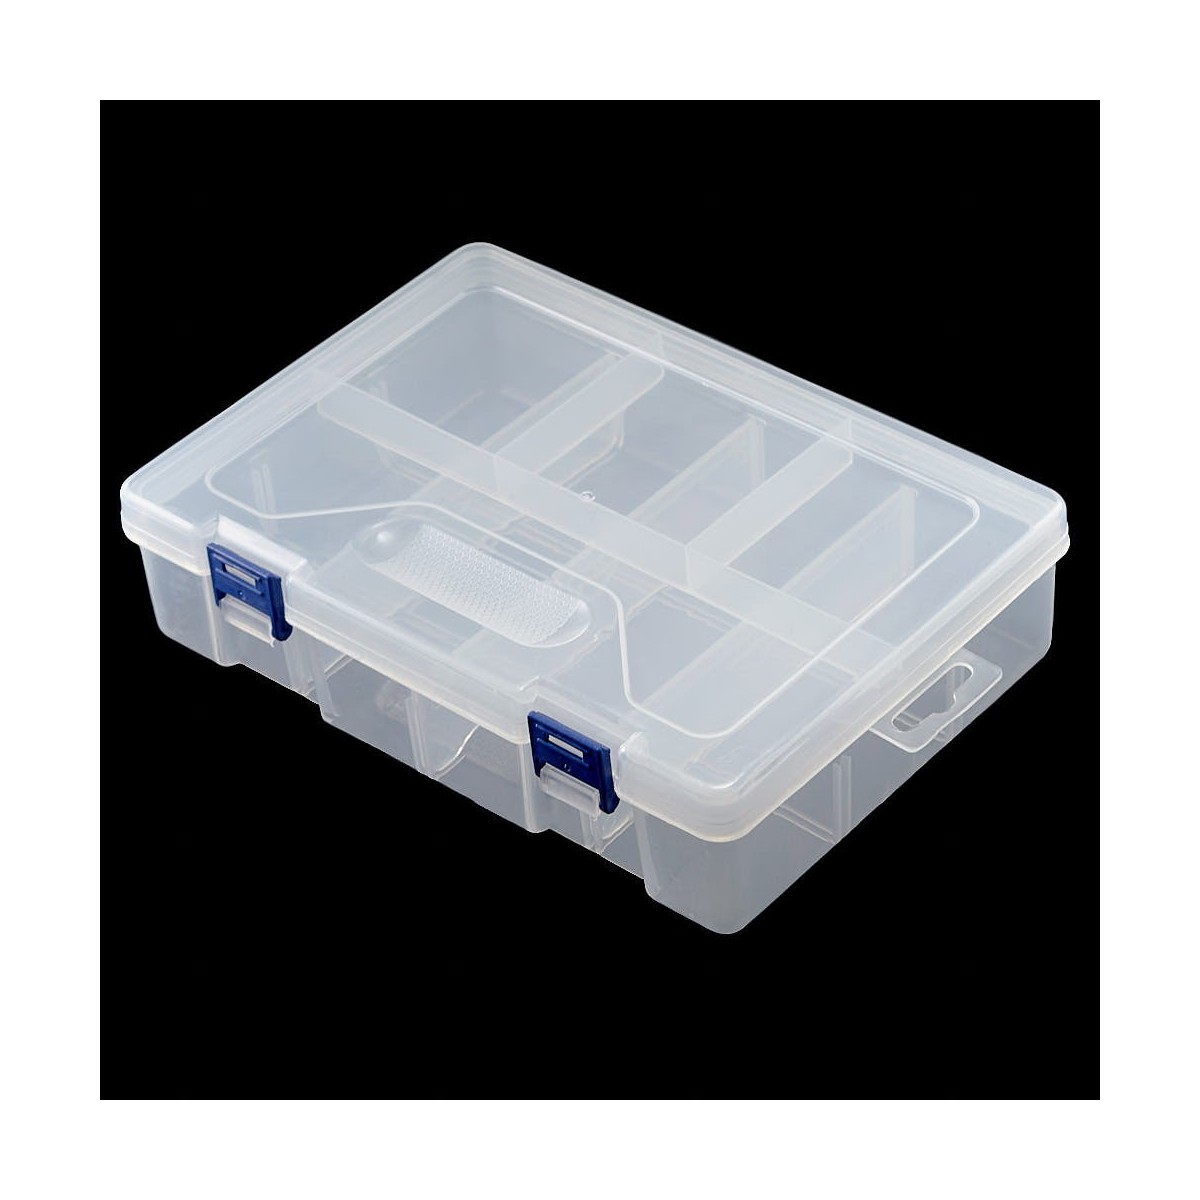 Caja Organizadora de Plástico - 2 Niveles (8 Compartimentos)